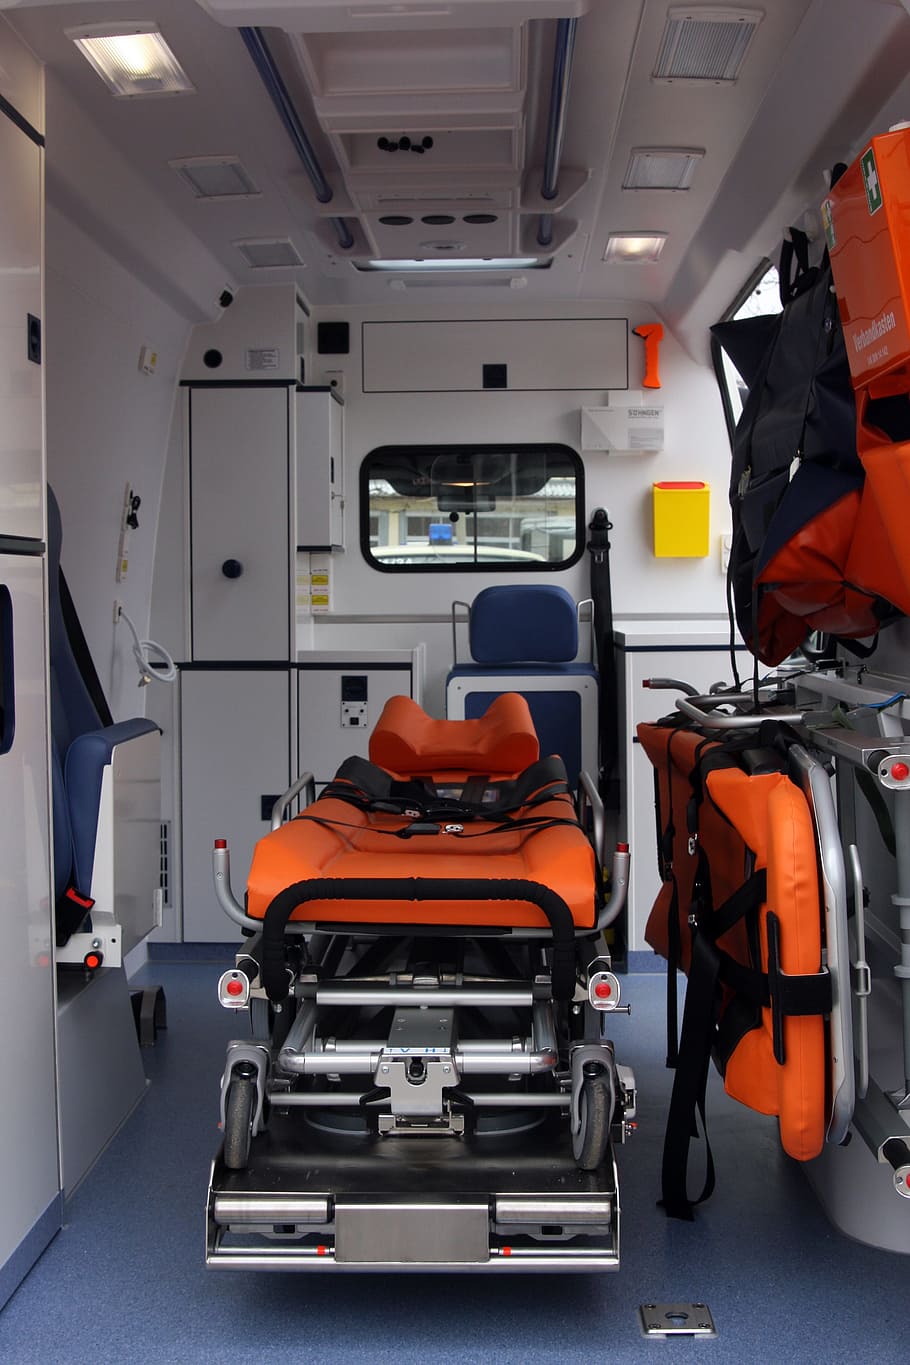 oranye, hitam, tandu, di dalam, ambulans, kendaraan, medis, penyelamatan, darurat, simpan